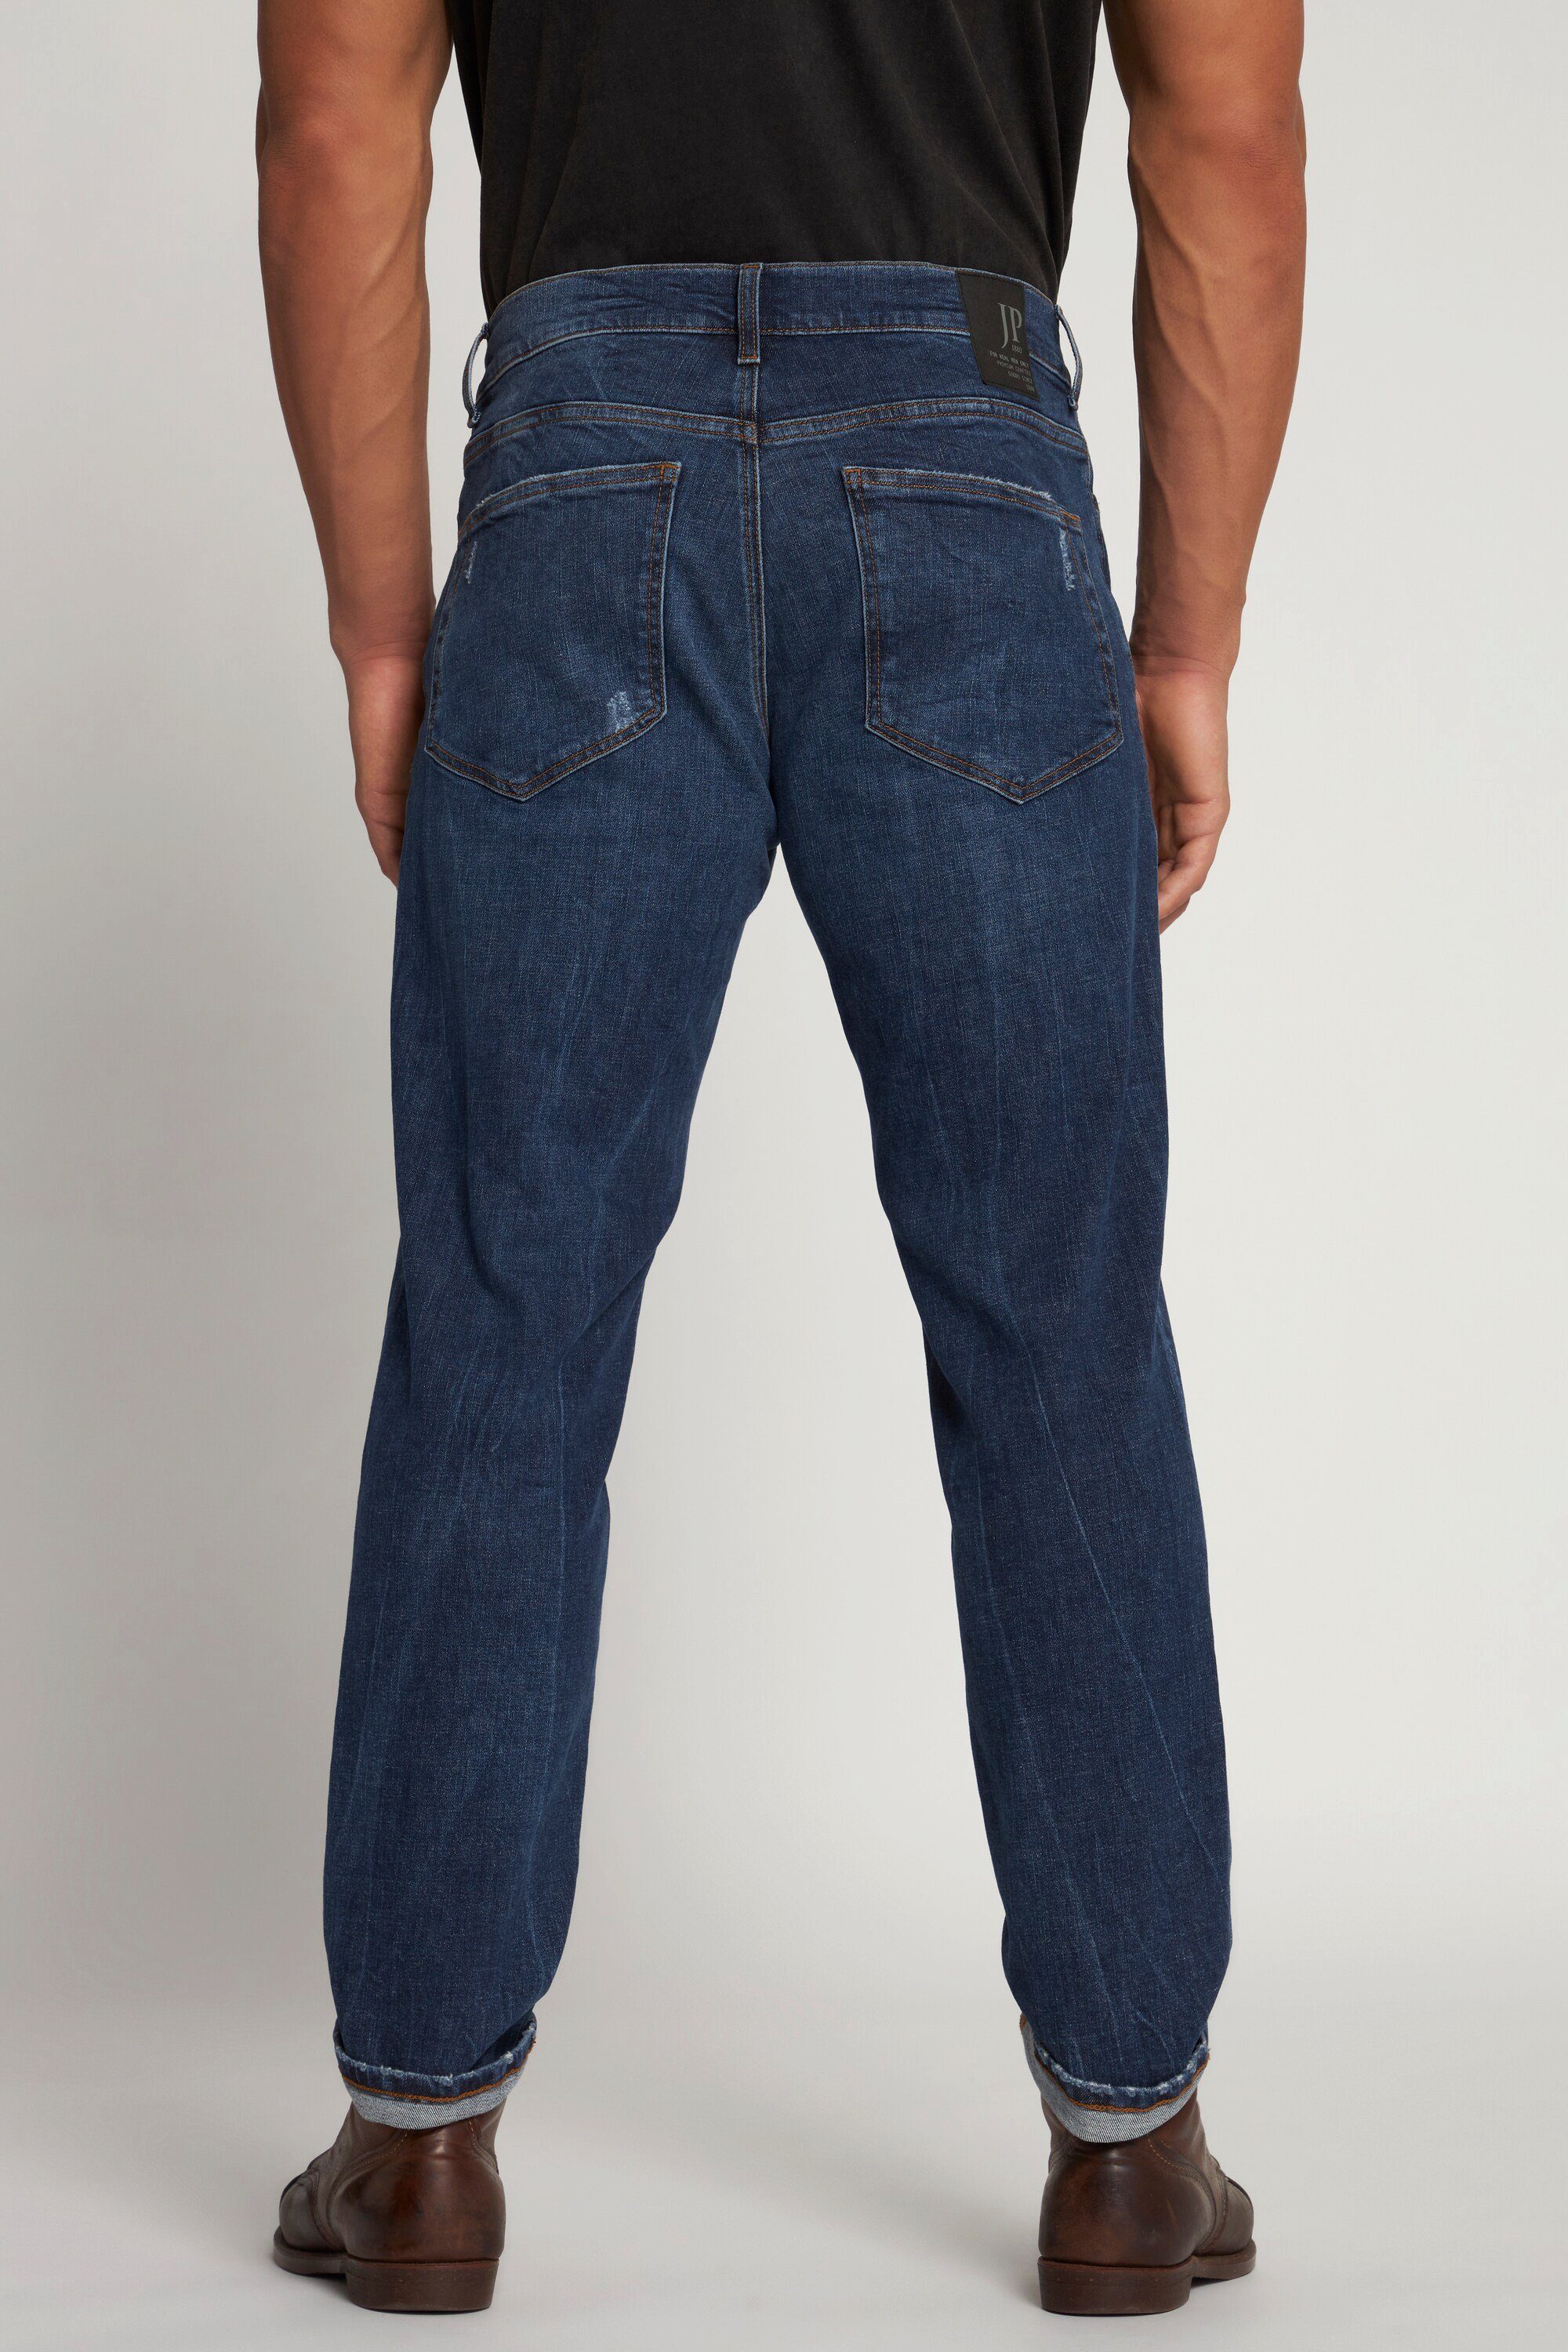 JP1880 5-Pocket-Jeans Tapered Fit Loose 5-Pocket Jeans Denim